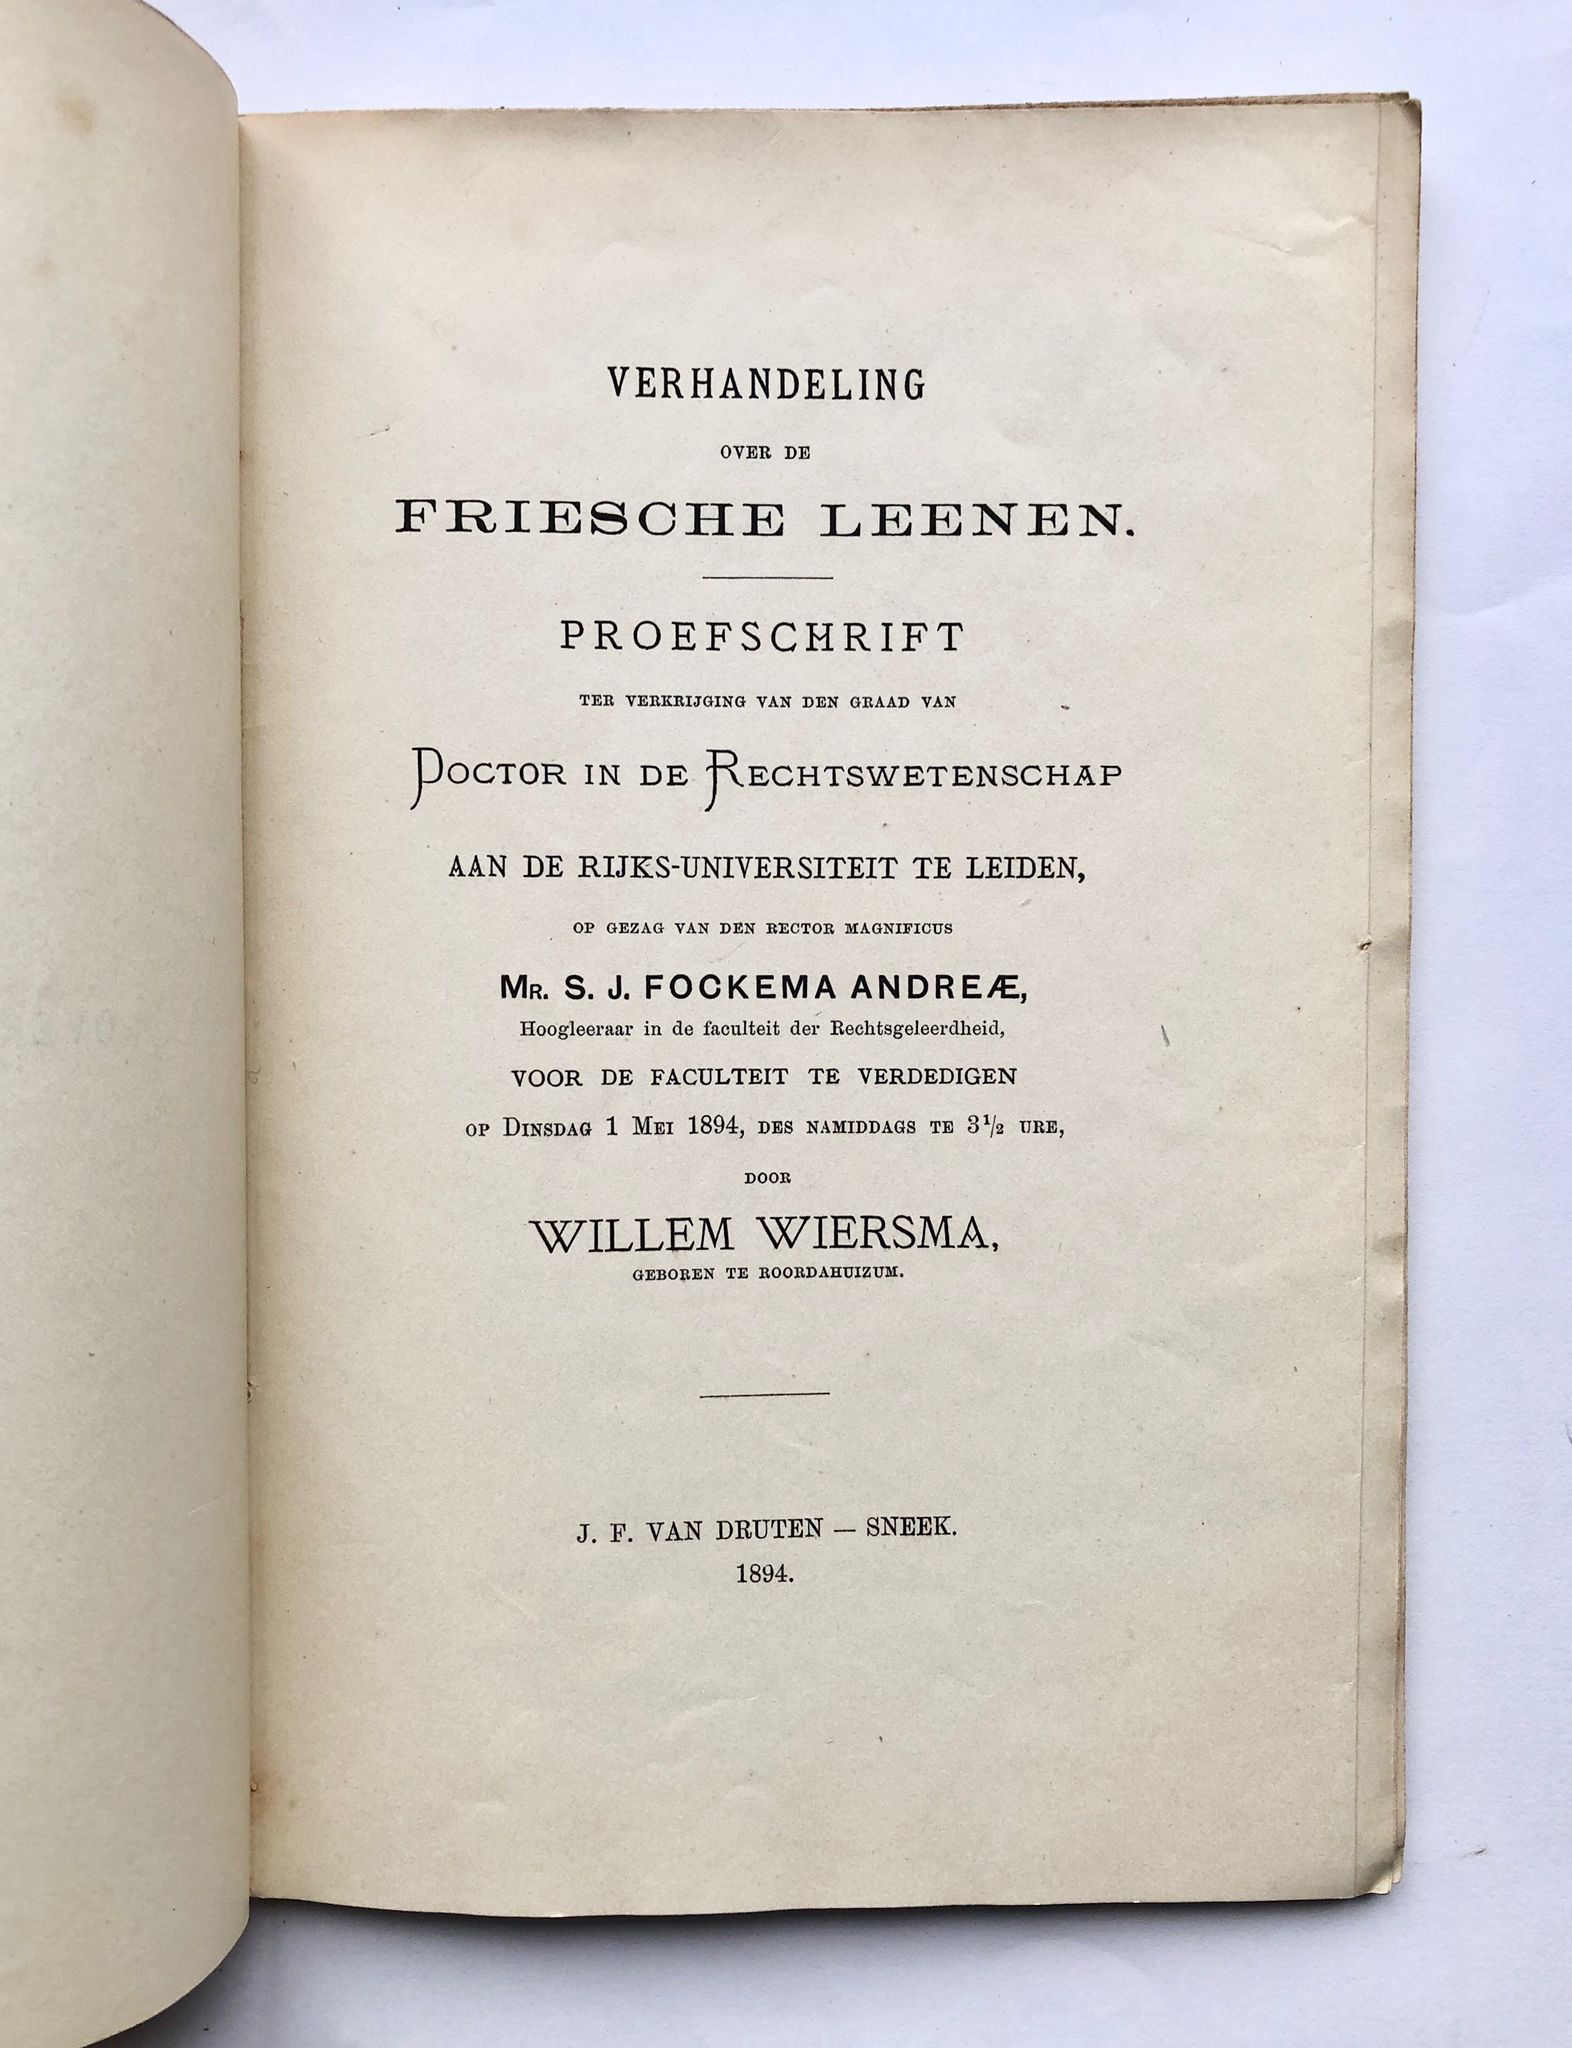 [Friesland, Sneek, 1894] Verhandeling over de Friesche Leenen. Academisch proefschrift, J. F. van Druten, Sneek, 1894, 82 pp.